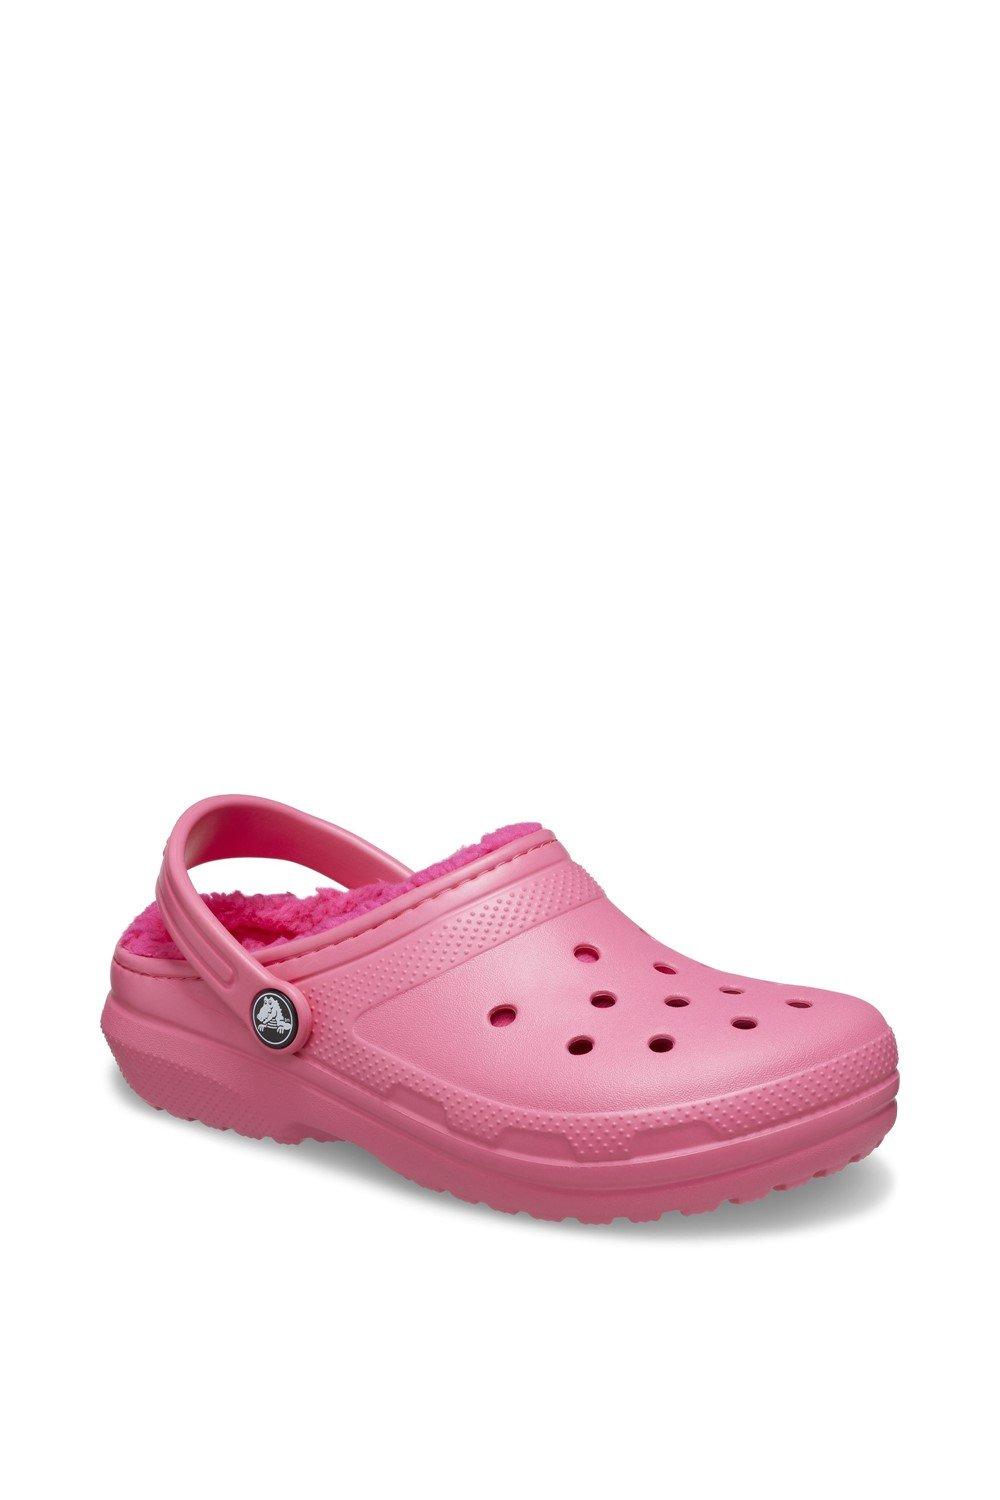 Классические сабо на подкладке Crocs, розовый